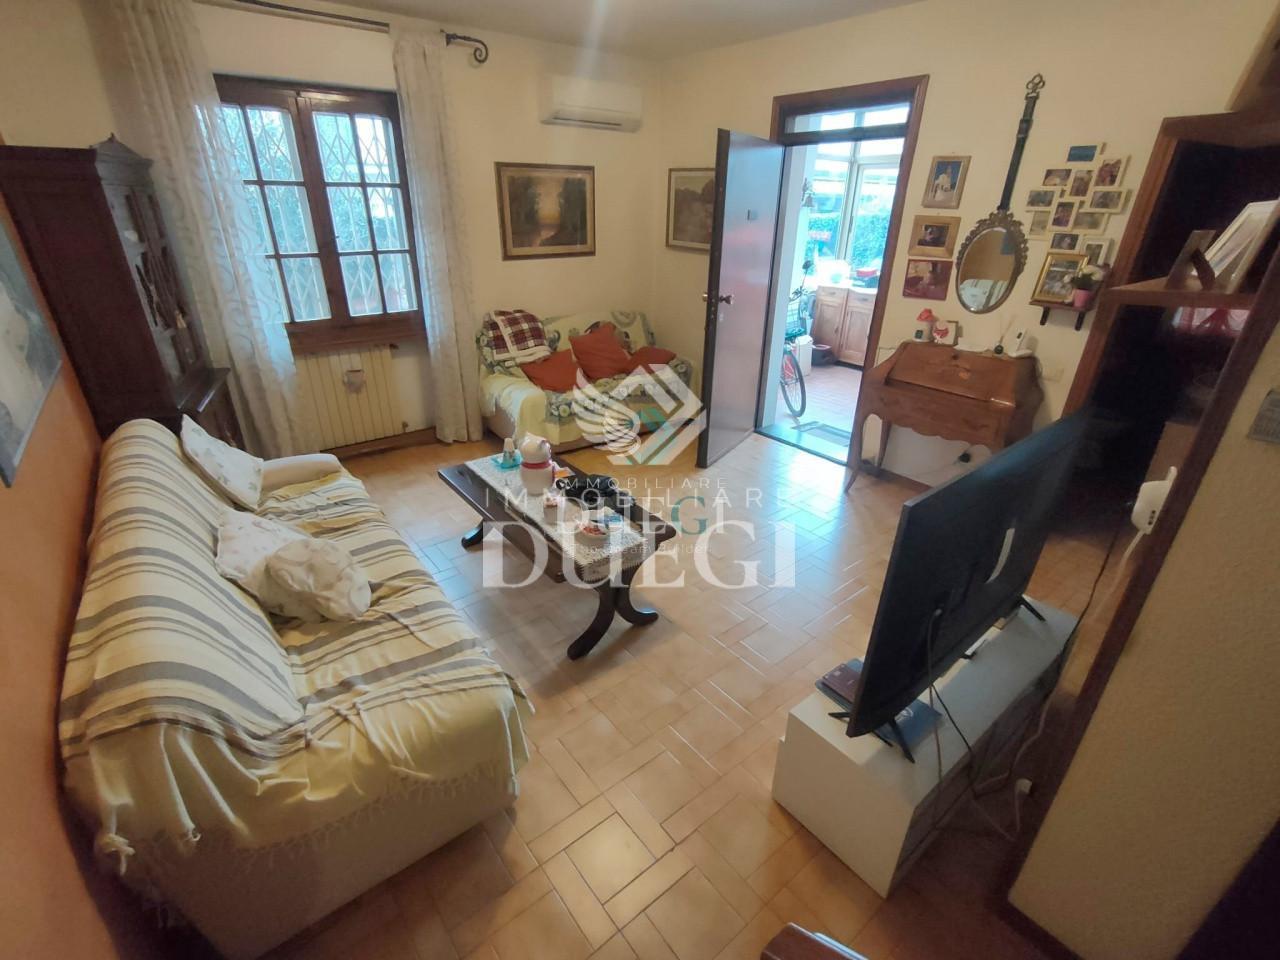 Villa Bifamiliare in vendita a Viareggio, 6 locali, prezzo € 279.000 | PortaleAgenzieImmobiliari.it